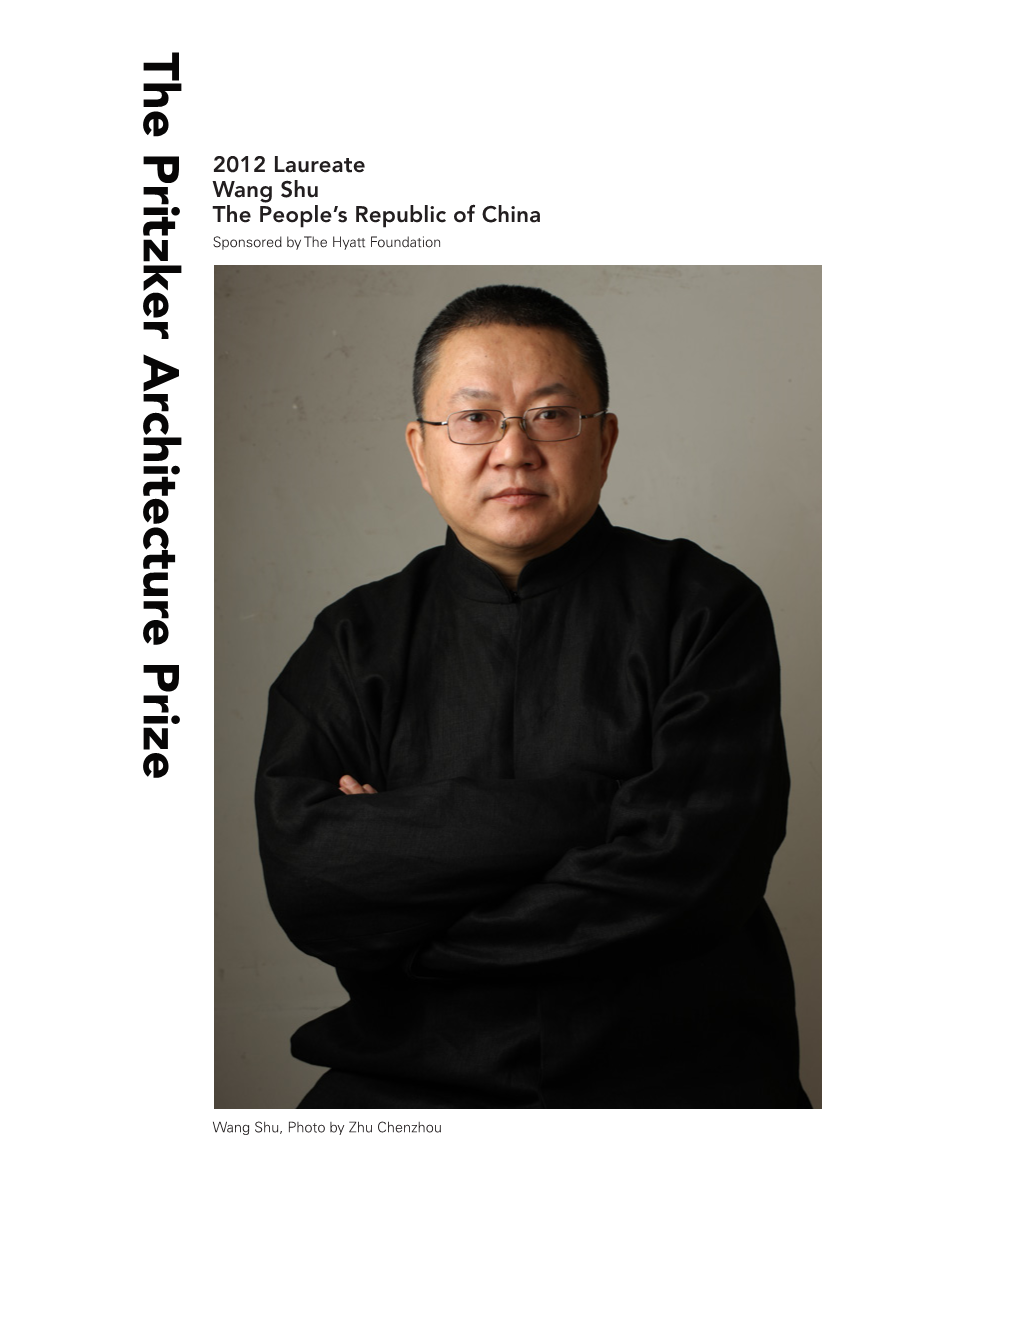 2012 Laureate Wang Shu the People's Republic of China